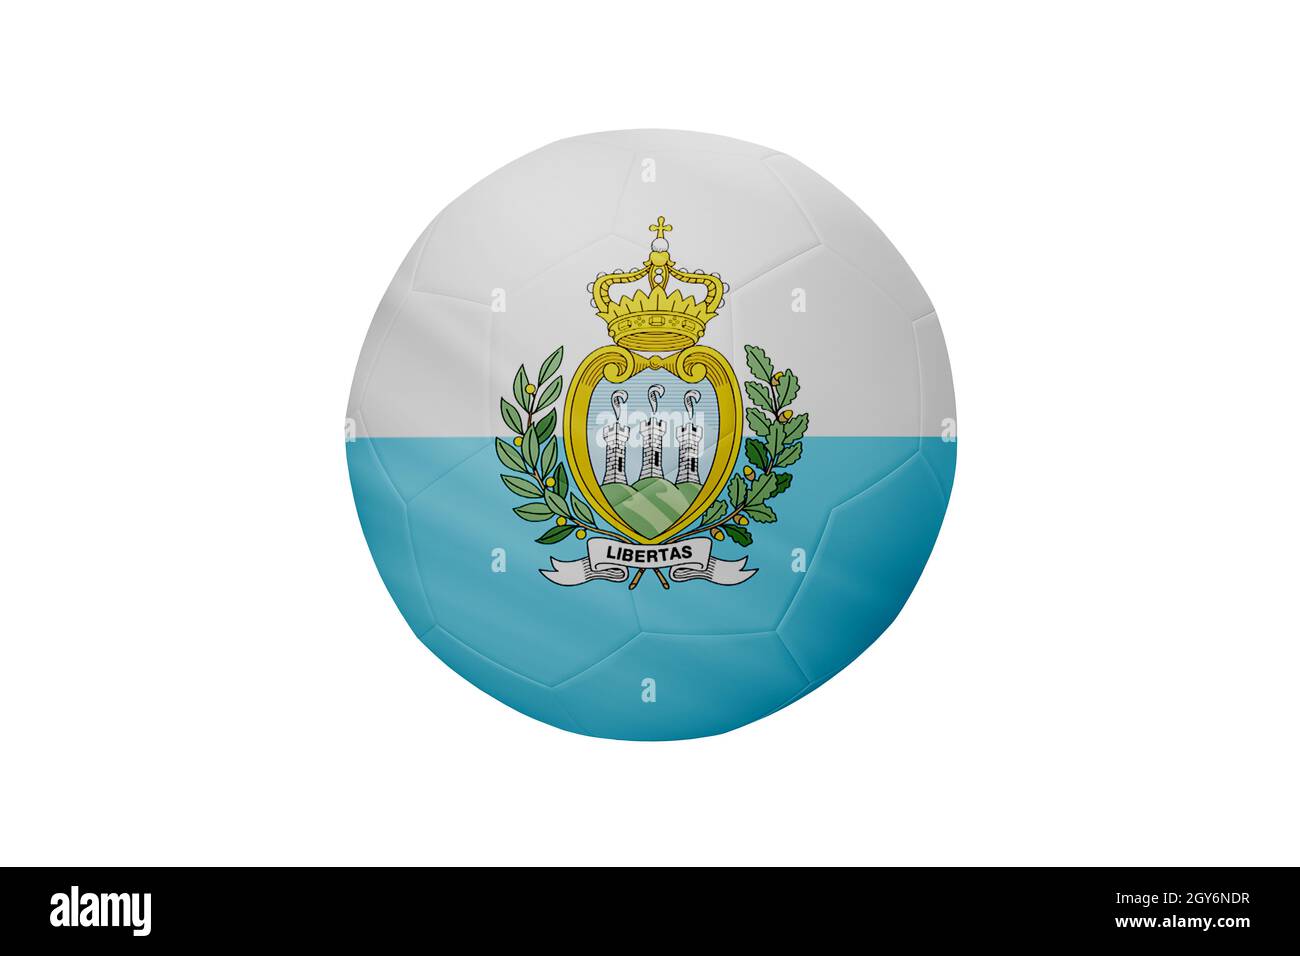 Football aux couleurs du drapeau de Saint-Marin isolé sur fond blanc. Dans une image conceptuelle de championnat soutenant Saint-Marin. Banque D'Images